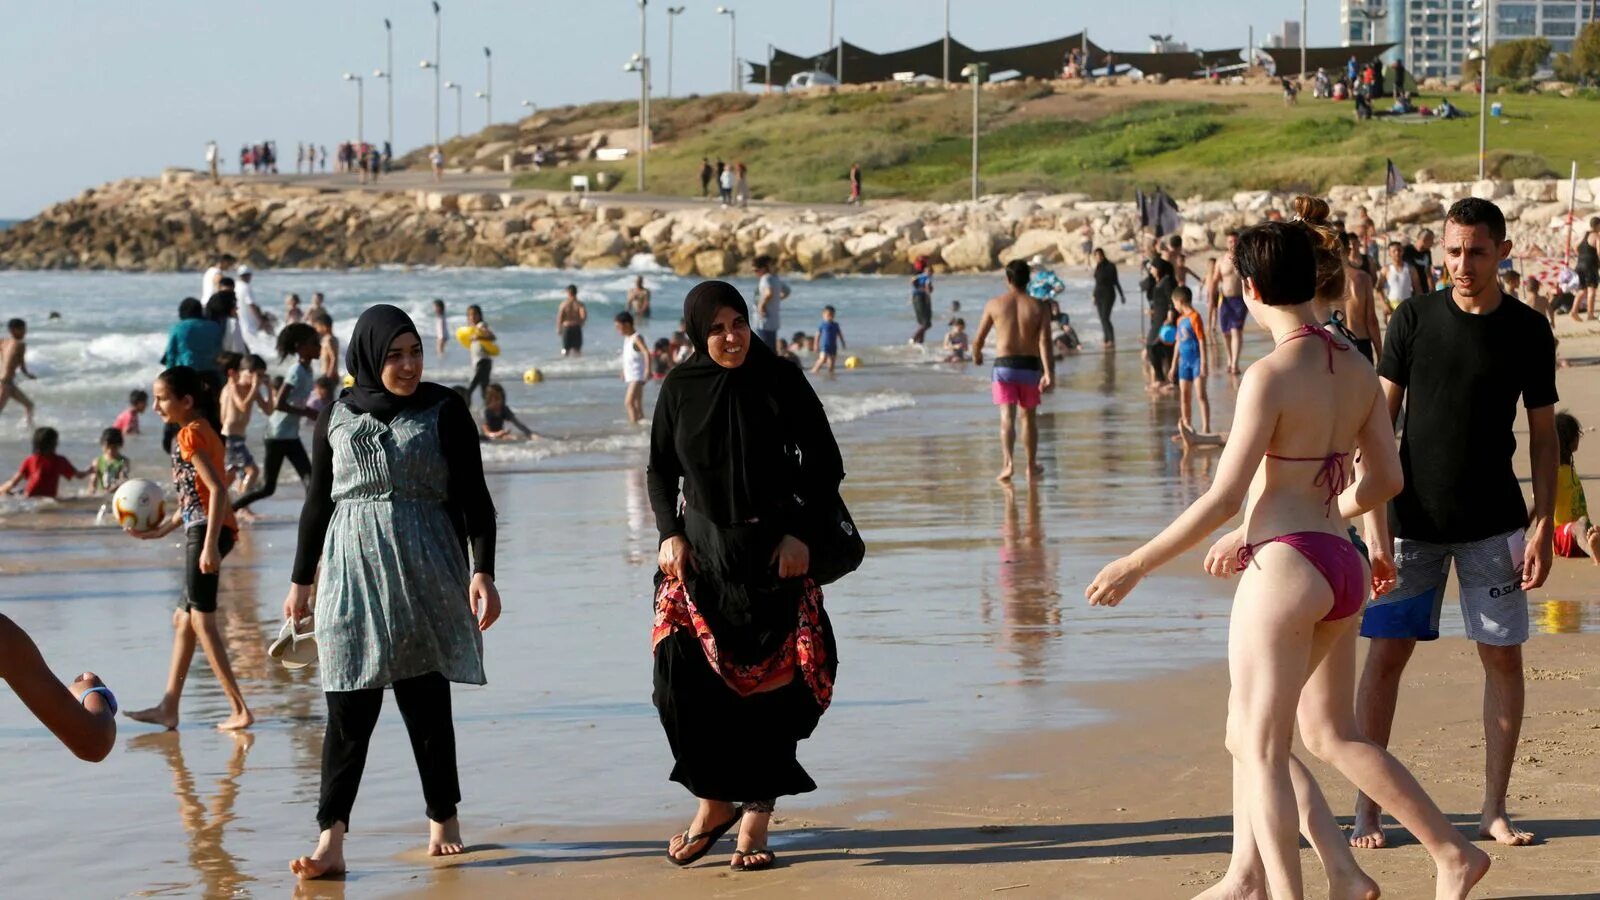 Когда можно купаться в турции. Буркини Иран. Марокко паранджа. Буркини никаб. Люди на пляже.